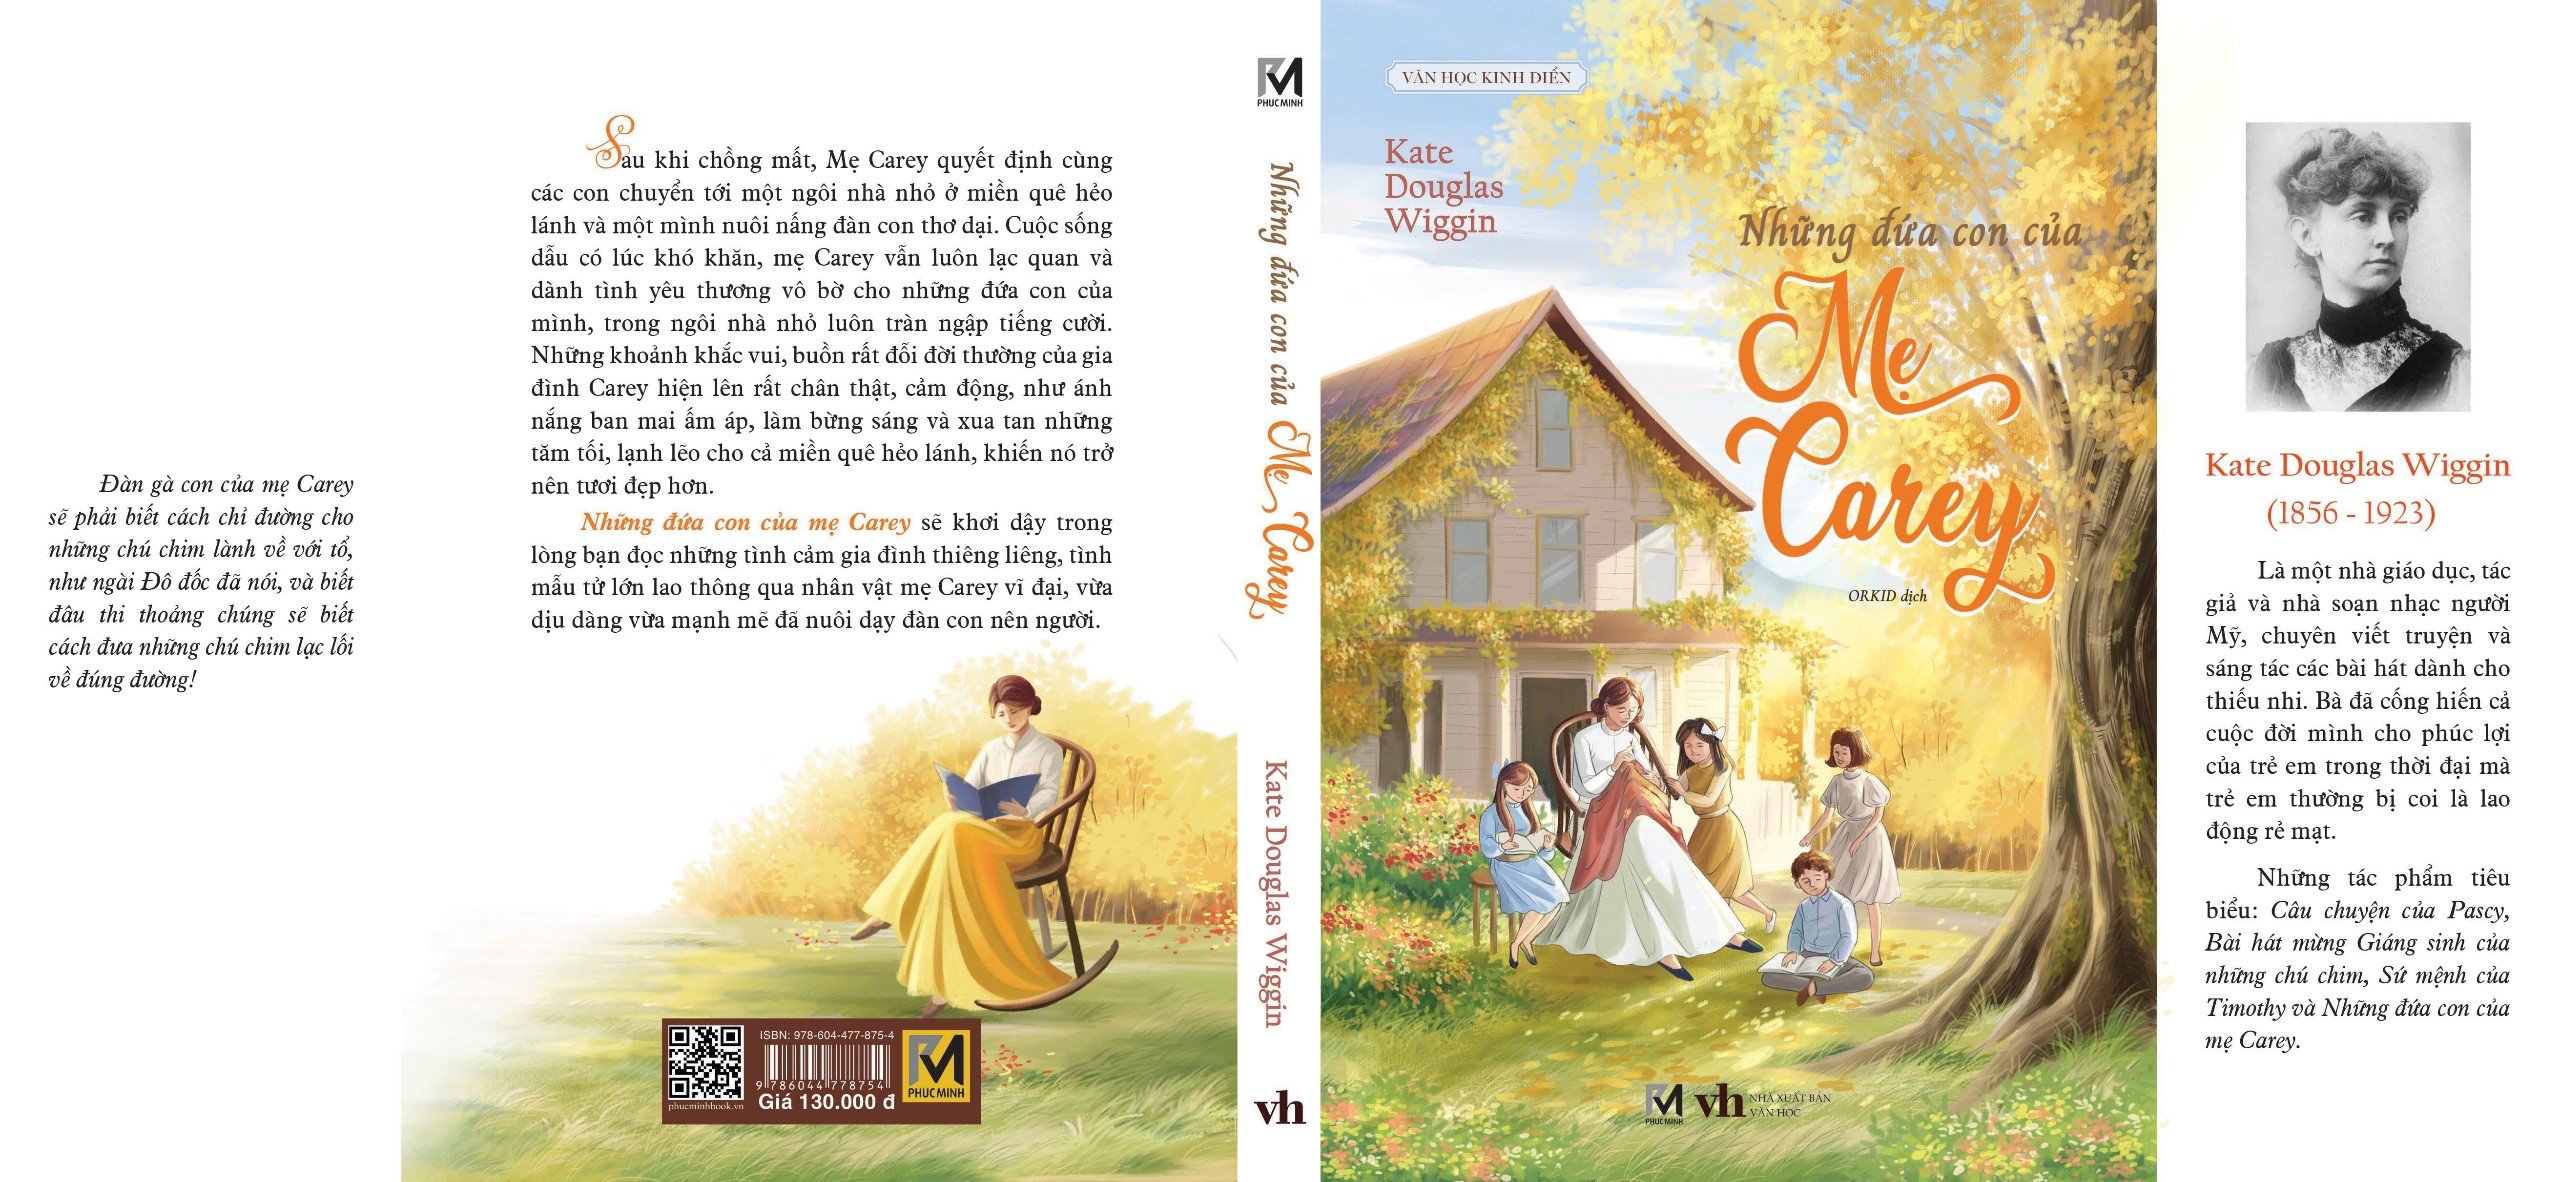 Sách - Những đứa con của mẹ Carey (Tác giả Kate Douglas Wiggin - Dịch giả Orkid) Tác phẩm văn học kinh điển